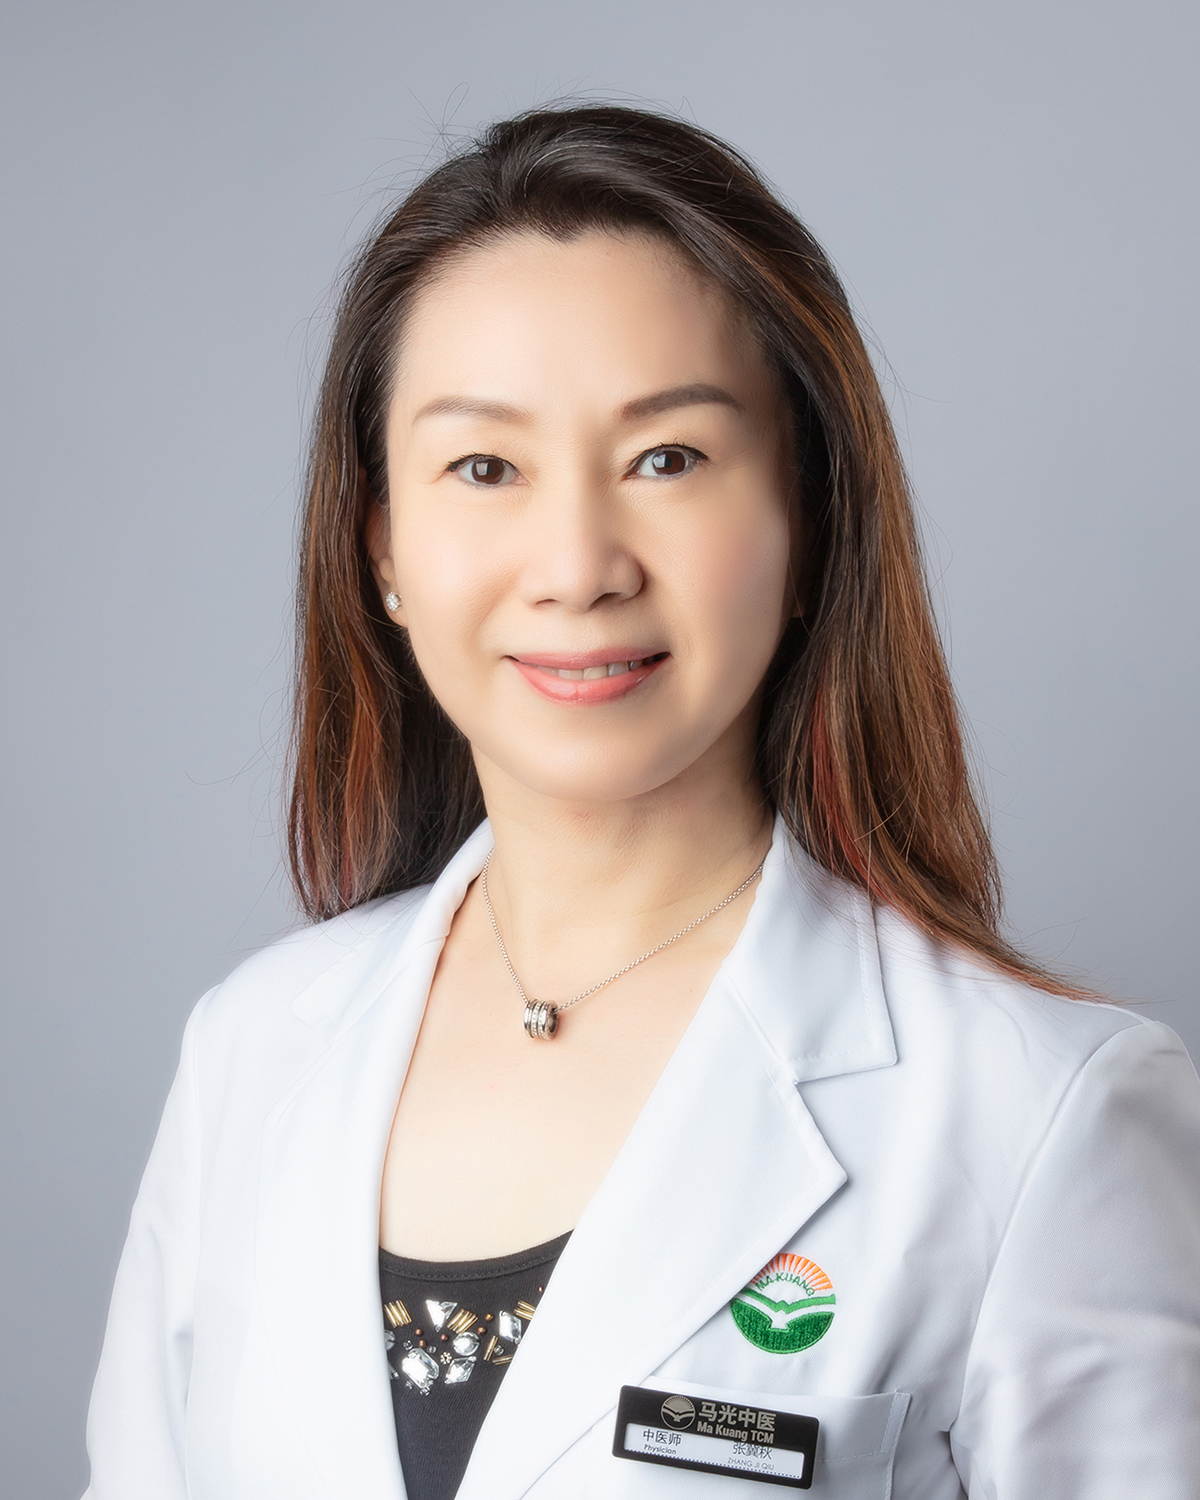 TCM PHYSICIAN DR. ZHANG JI QIU